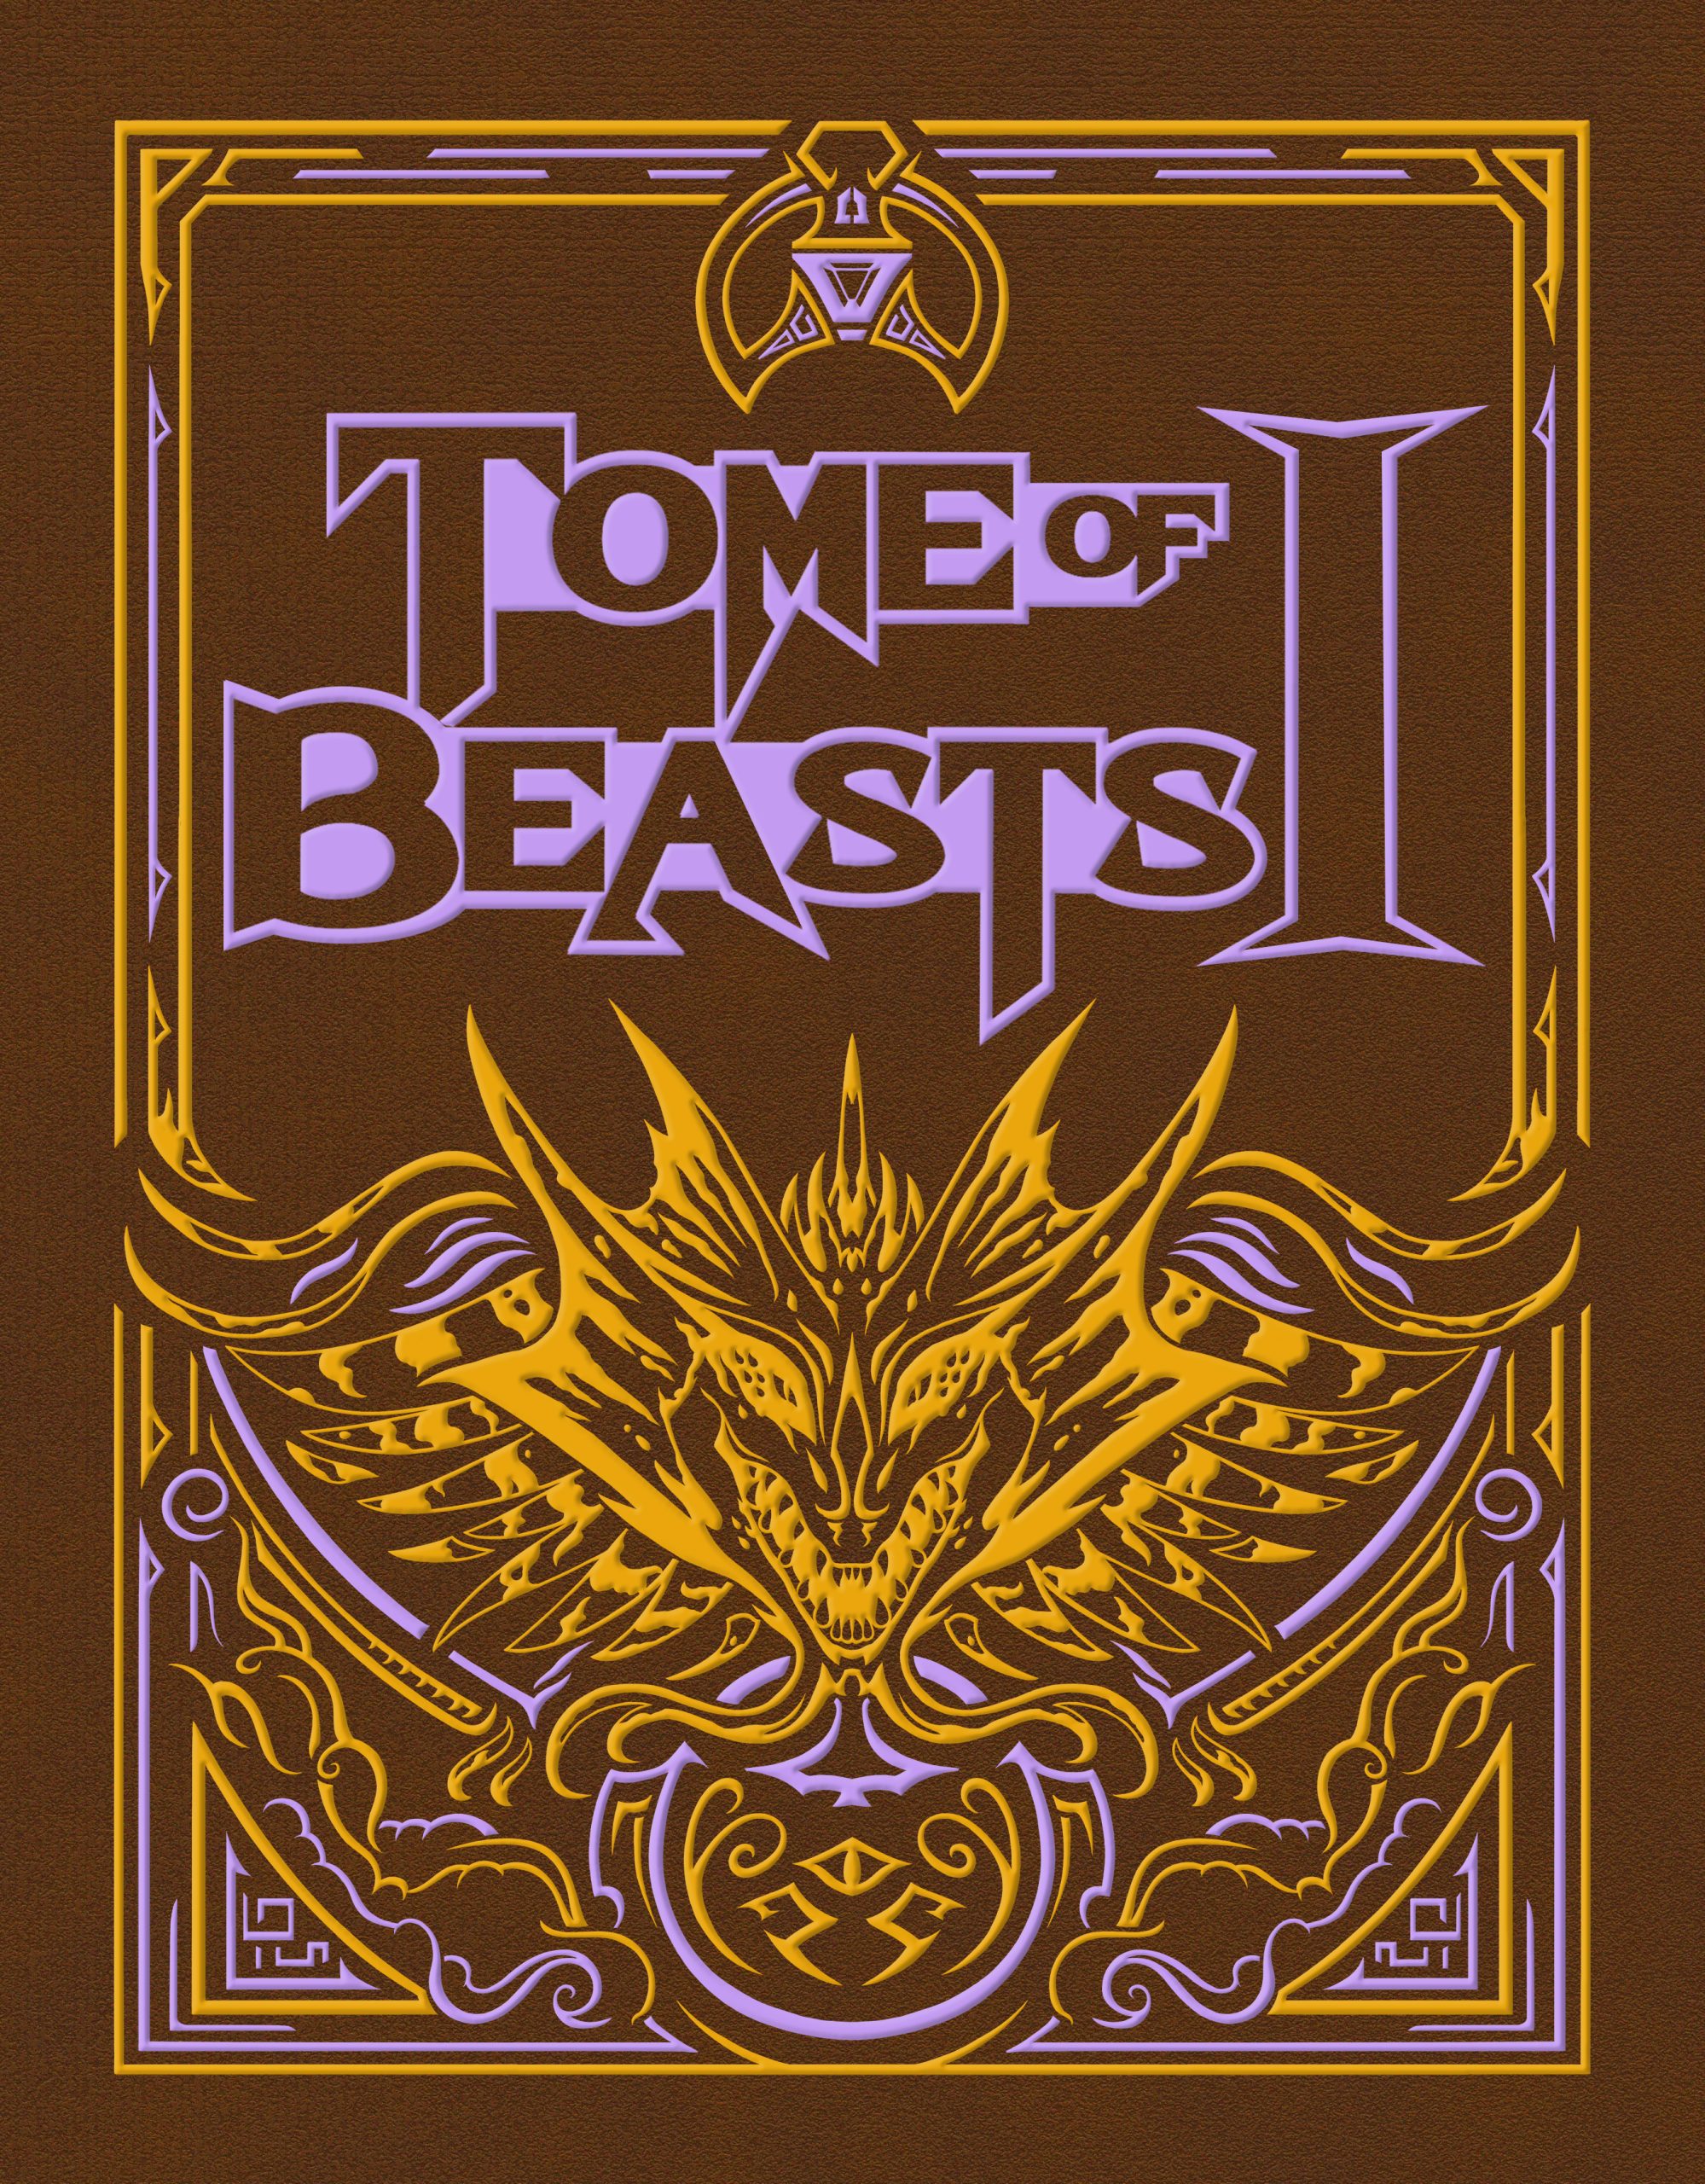 Tome of Beasts: Pré-Venda Oficial